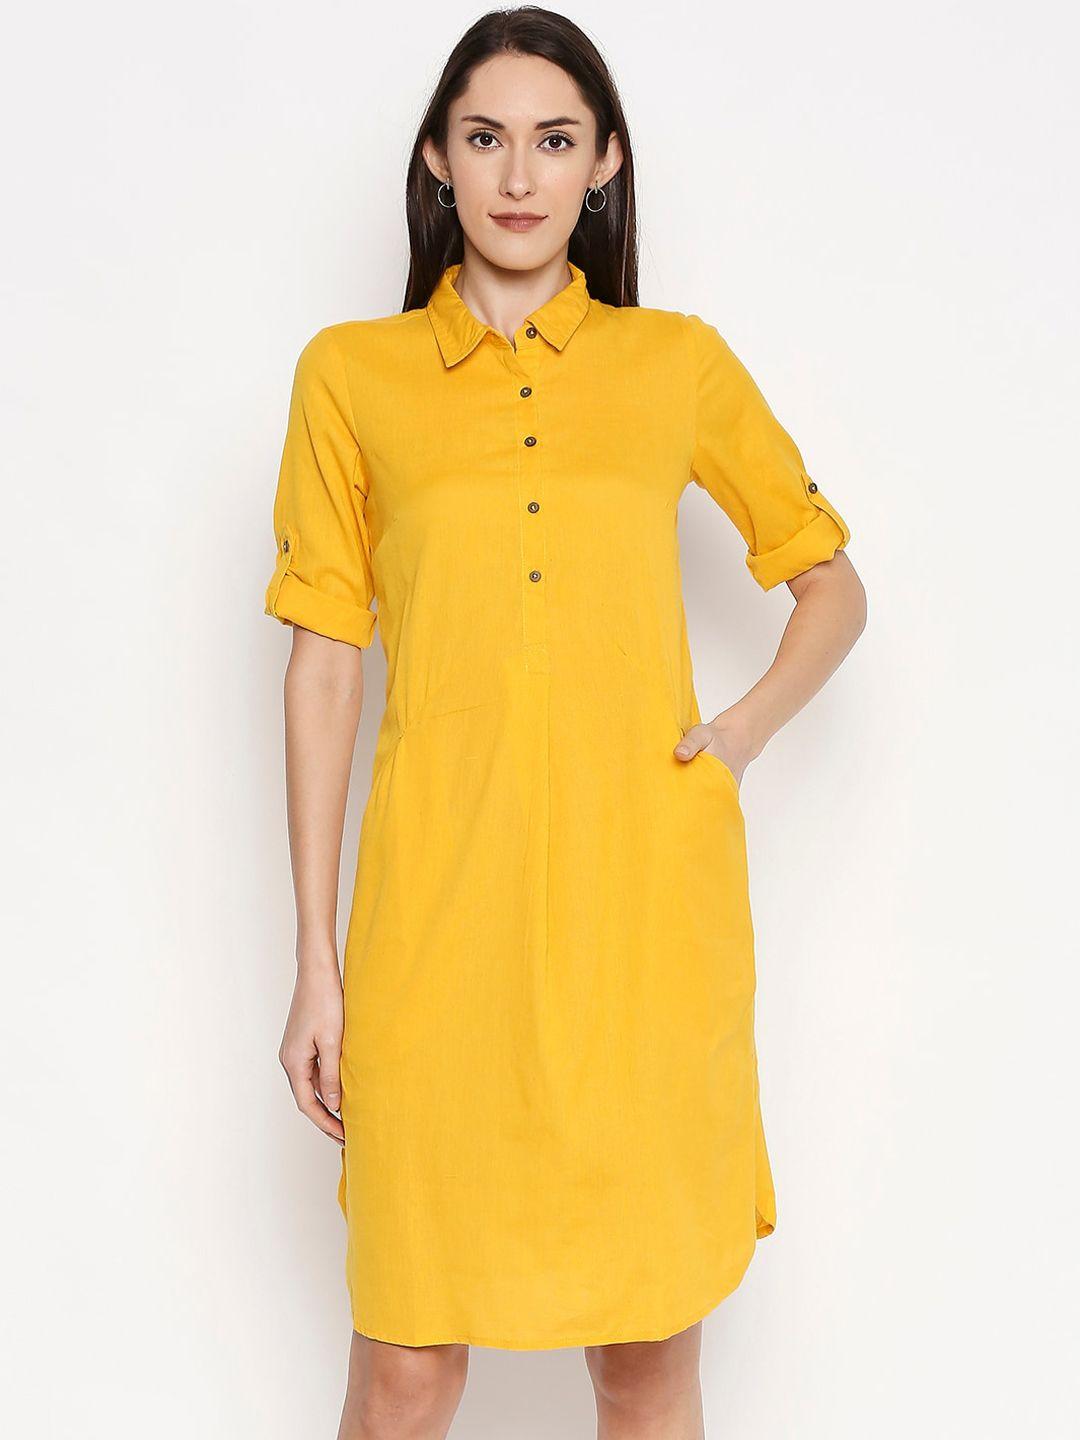 akkriti by pantaloons women yellow solid shirt dress